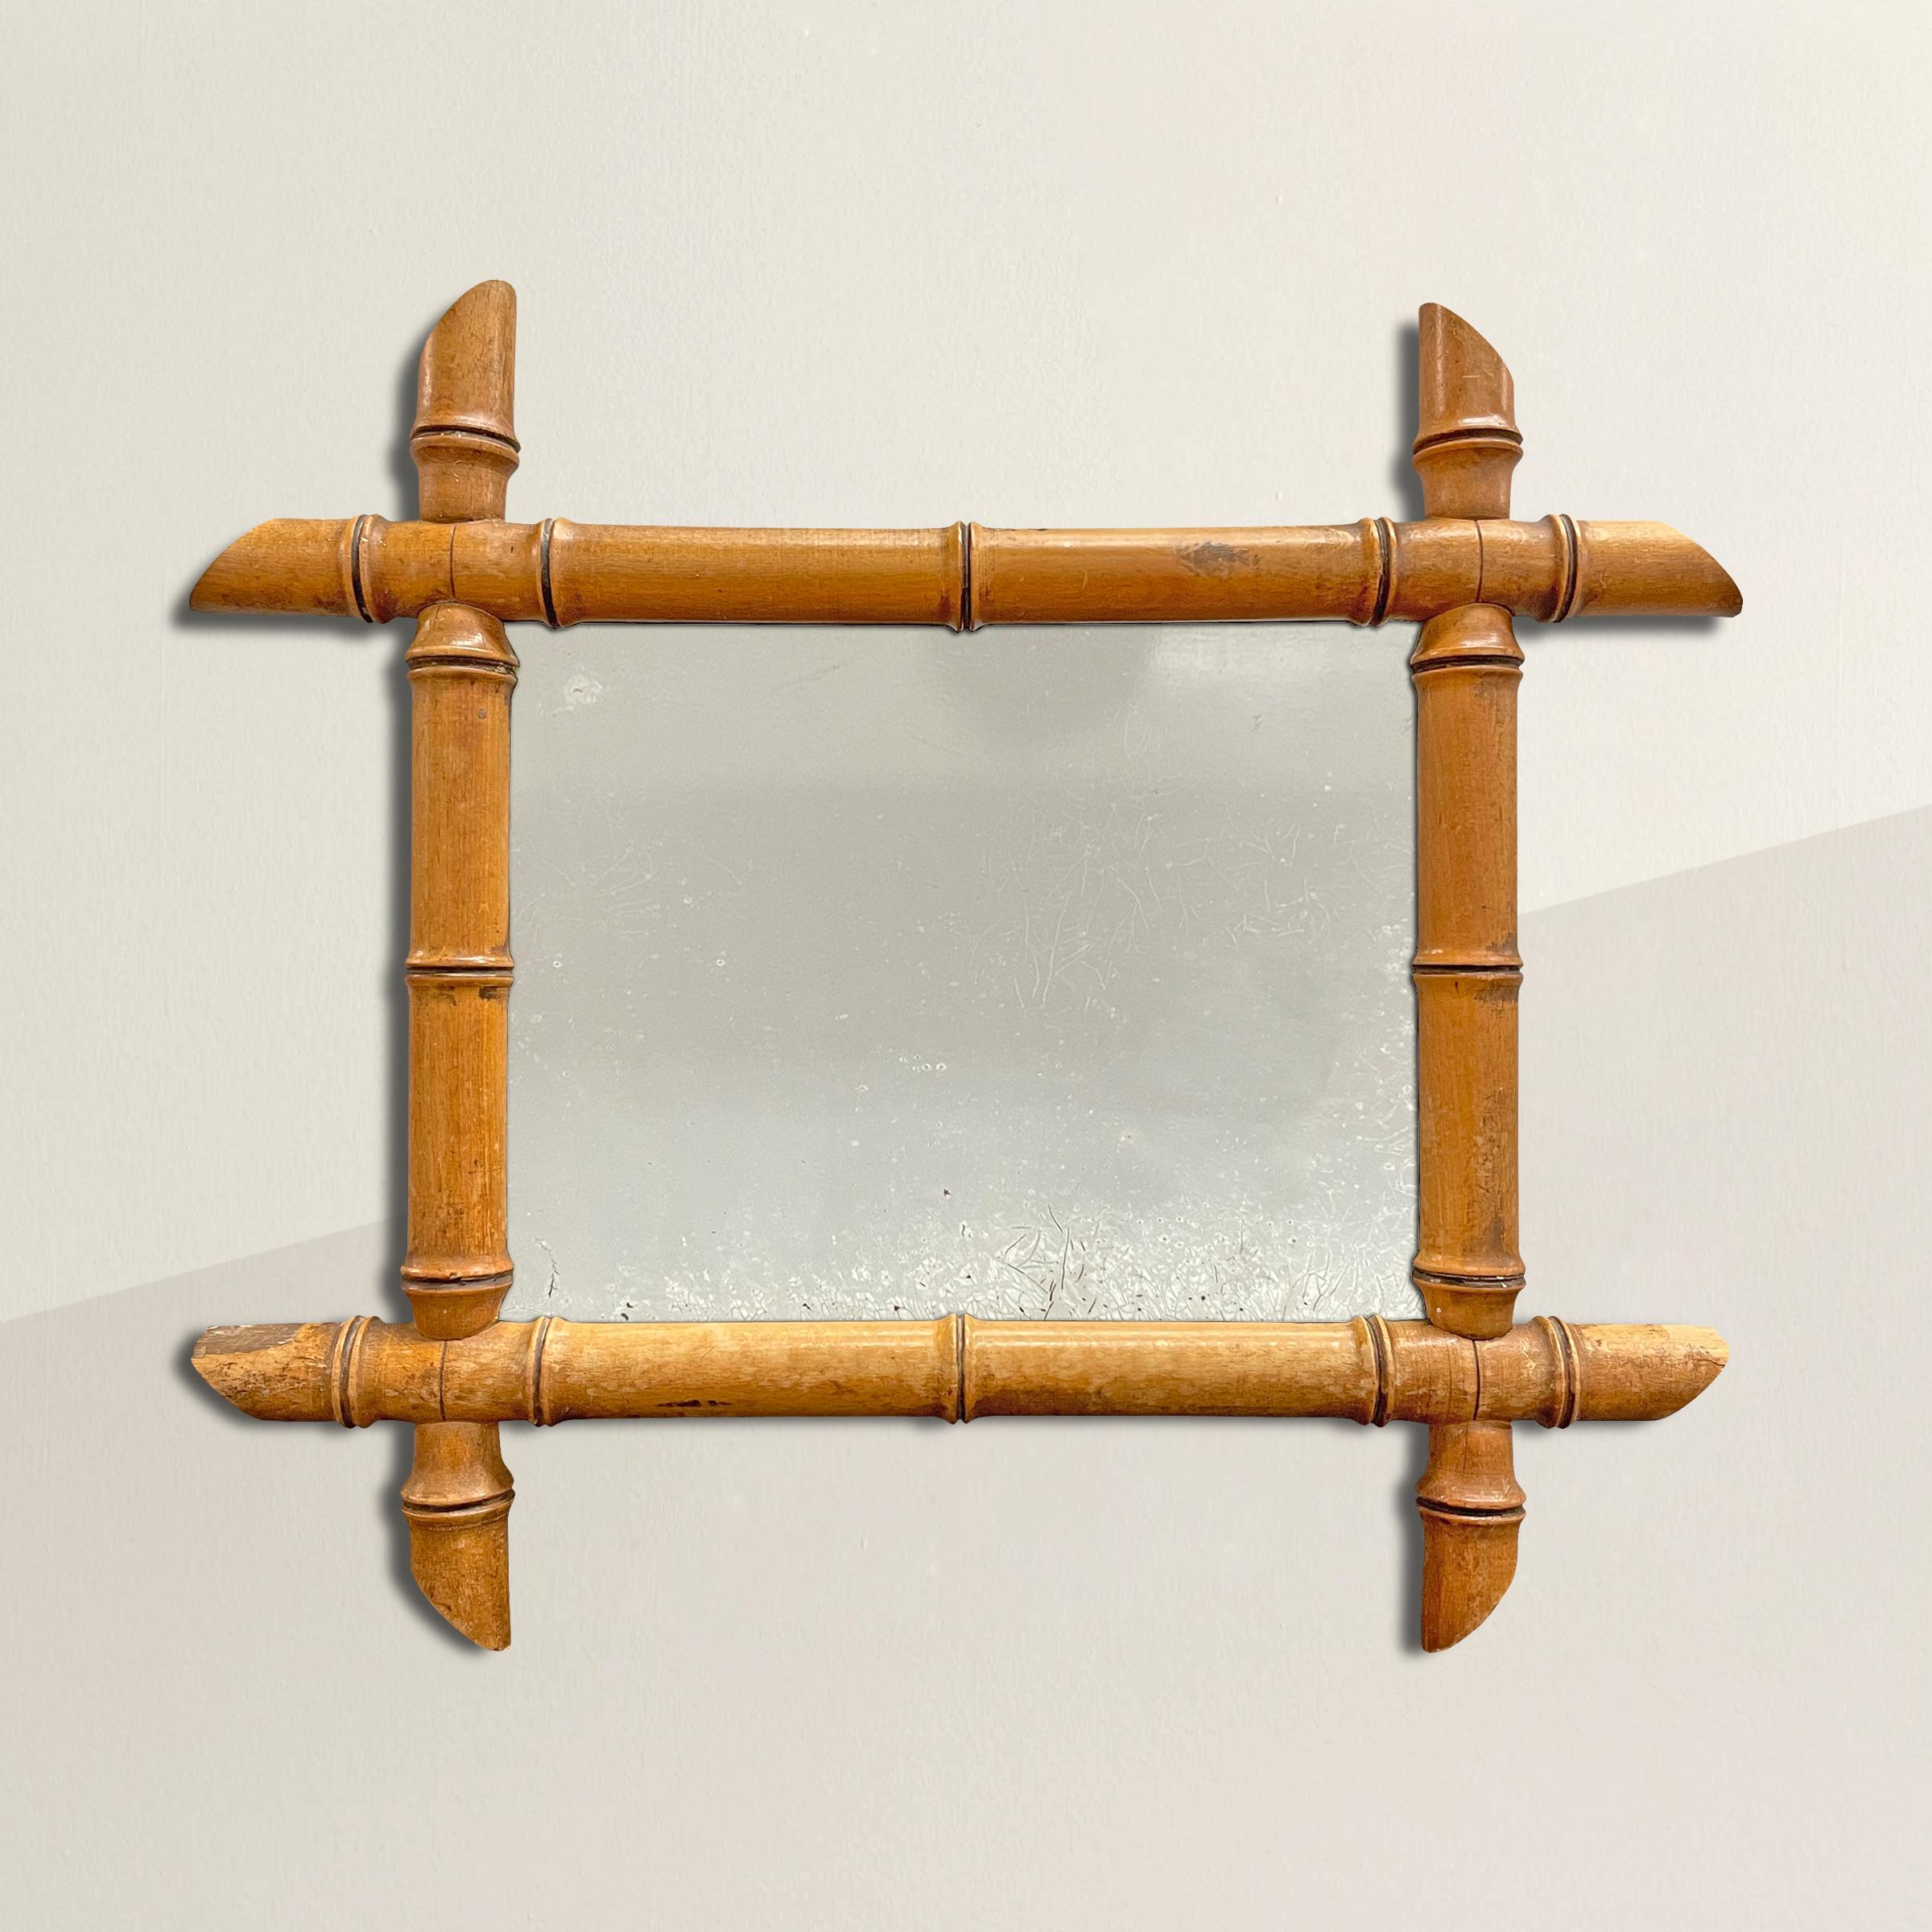 Ein charmanter Spiegel mit Rahmen aus französischem Ahornholz aus dem frühen 20. Jahrhundert, geschnitzt, um Bambus zu imitieren. Der perfekte Spiegel für ein kleines Badezimmer, ein Gästezimmer oder überall dort, wo Sie ein wenig Glanz brauchen.